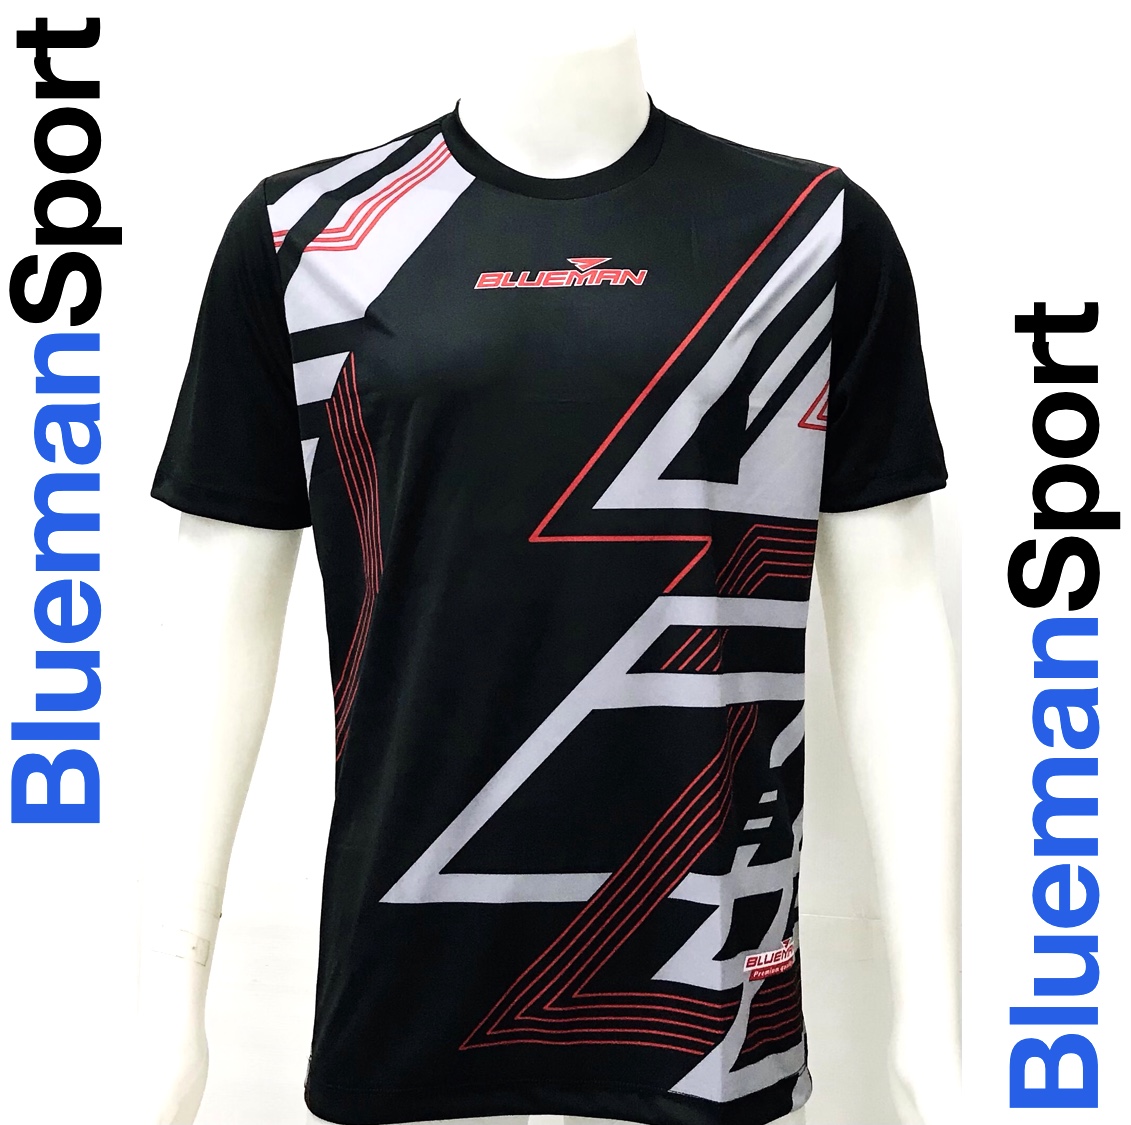 BLUEMAN Sport เสื้อกีฬาพิมพ์ลาย บลูแมนสปอร์ต รุ่นใหม่ล่าสุด (สีดำ BK)